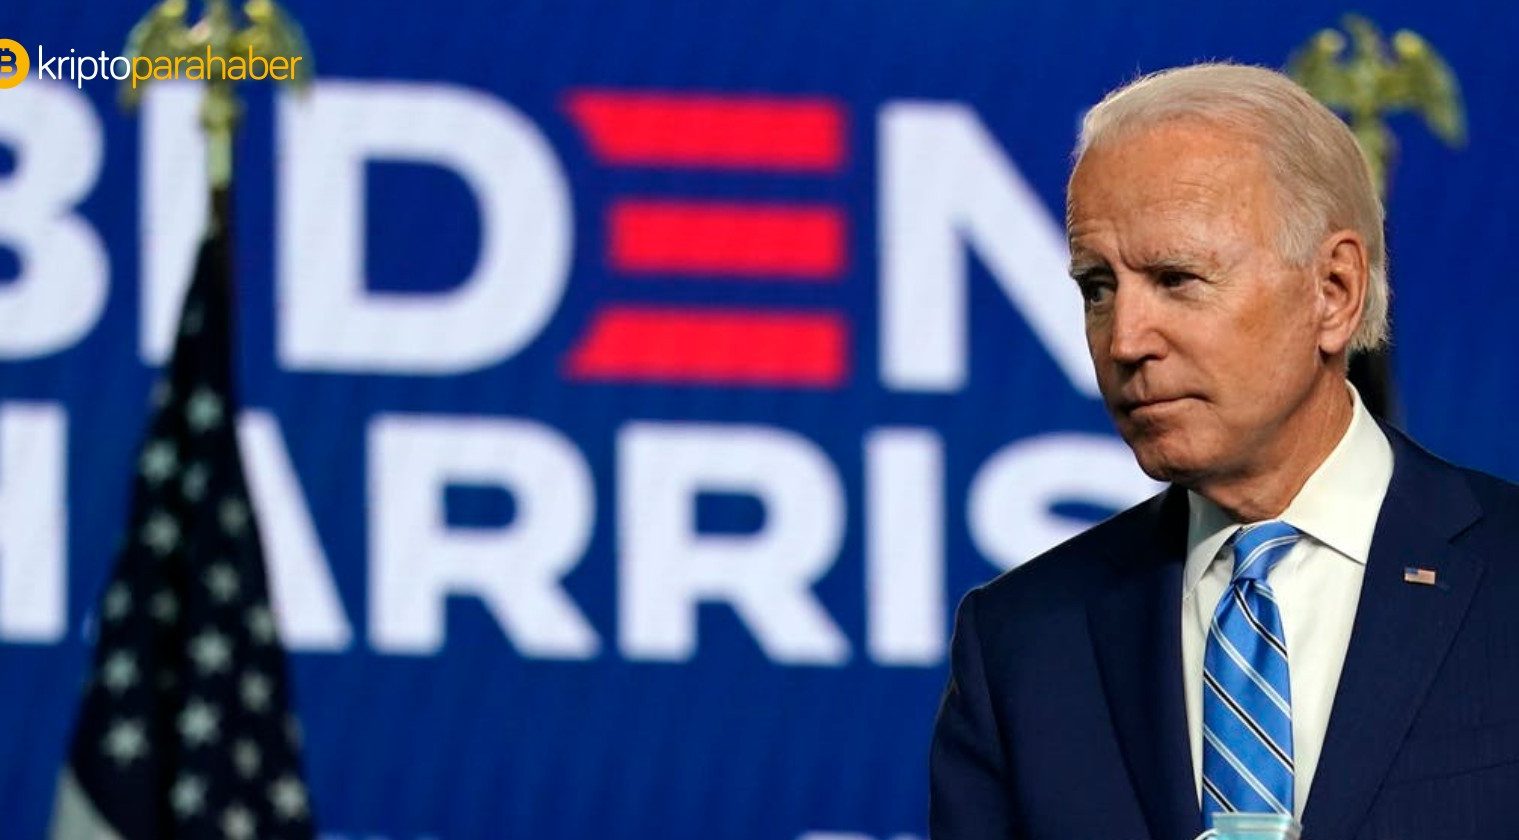 Kripto para platformunun CEO'su Joe Biden’ın kampanyasına devasa bağışta bulundu